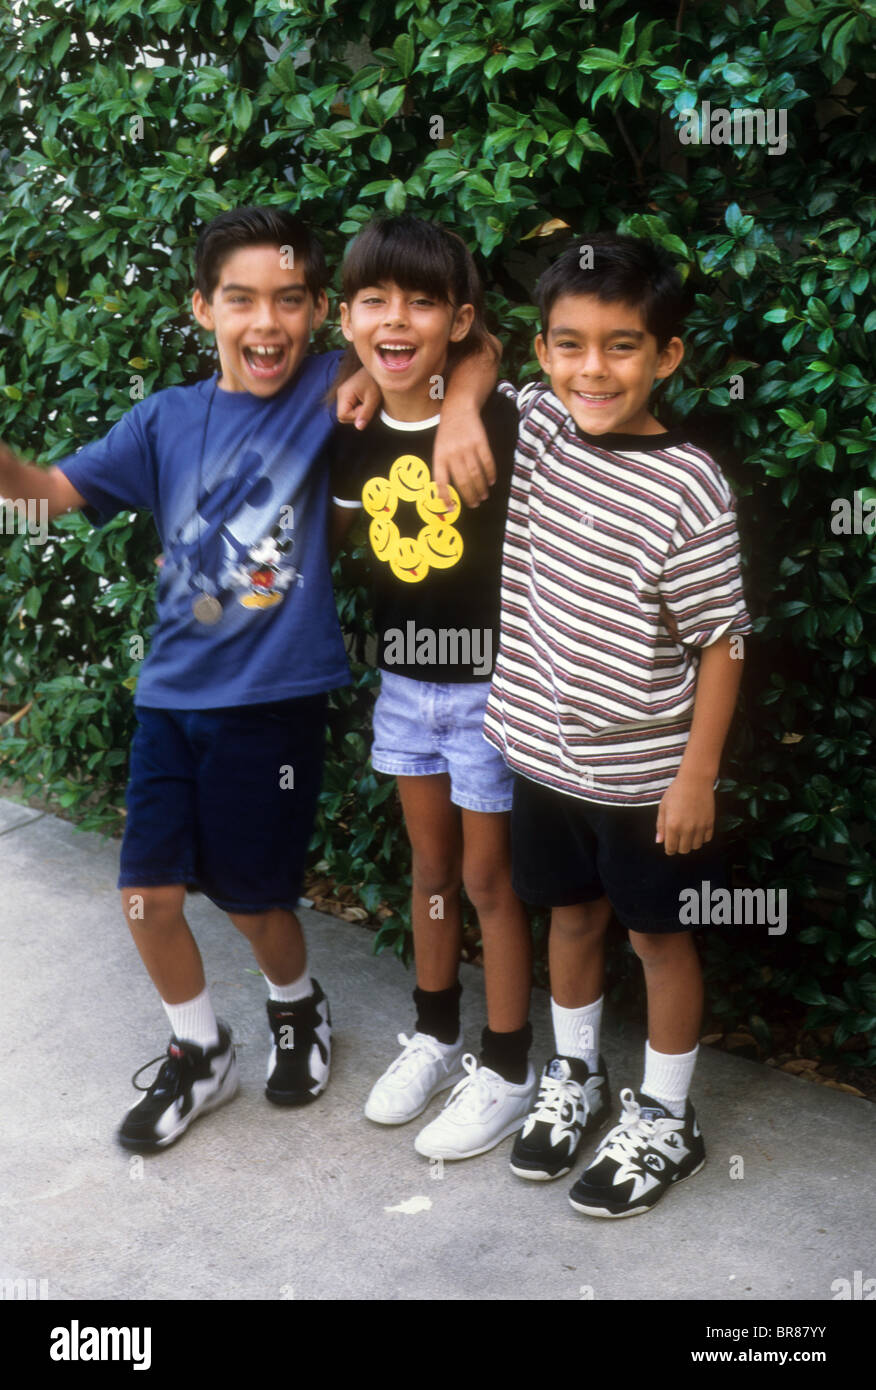 Hispanische Twin Mädchen Jungen großen älteren Bruder Lächeln Umarmung Lachen Spaß Liebe Shorts Sommer Aktie Touch Verhalten Stockfoto